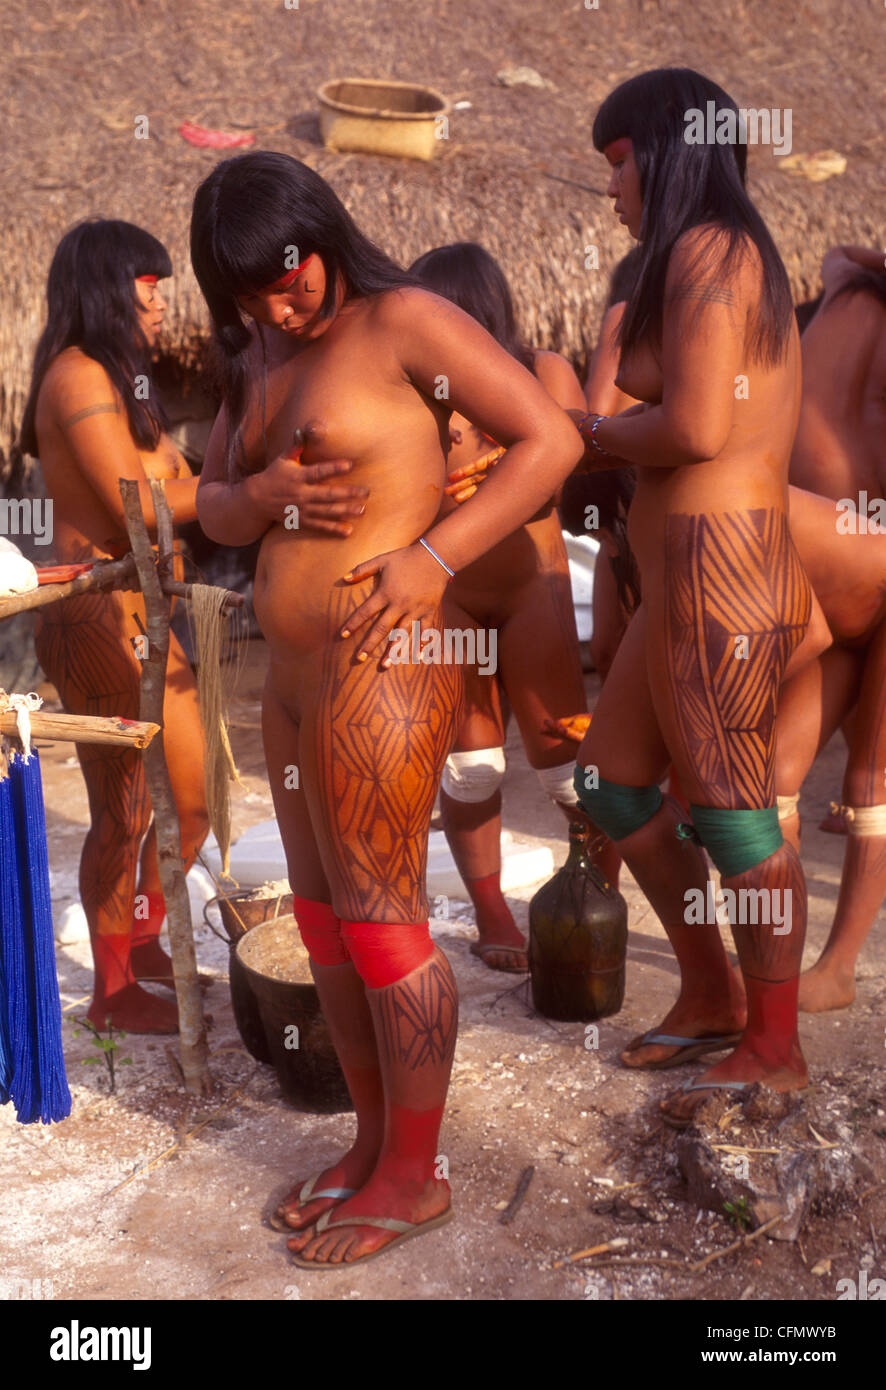 Дикие племена порно фото